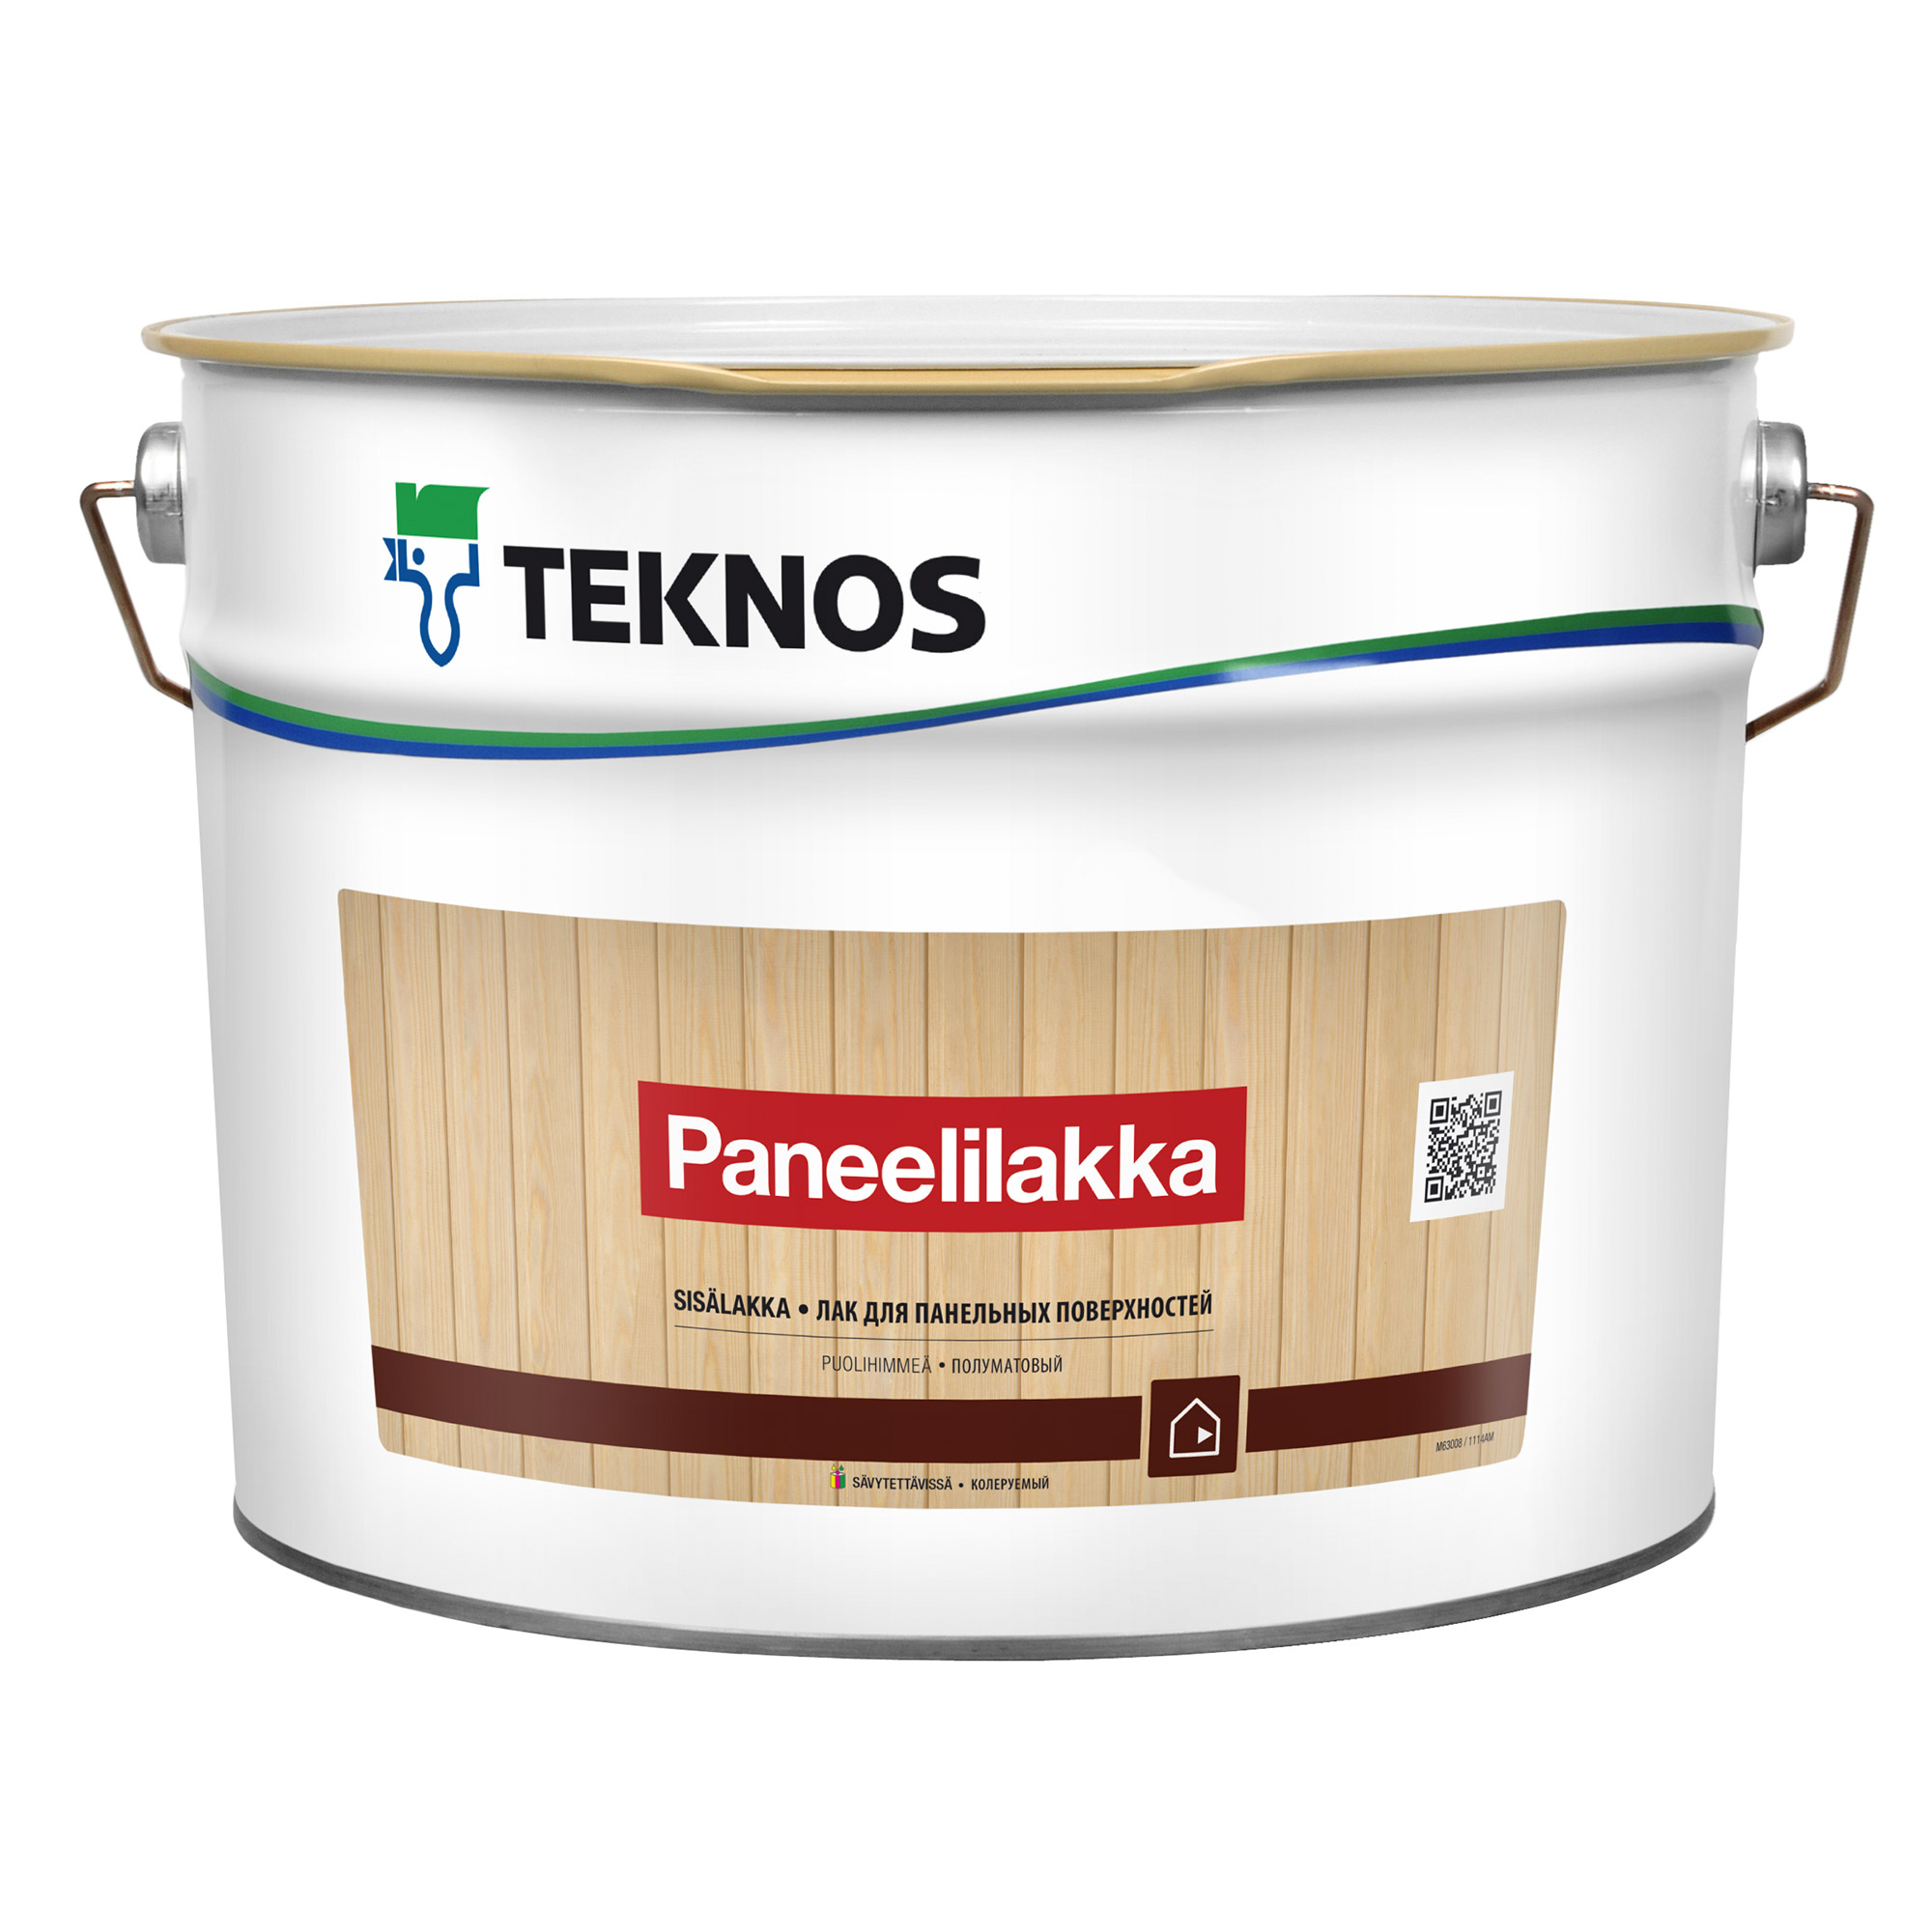 Купить лак для стен. Лак Teknos Paneelilakka 9 л. Лак для панелей Paneelilakka 0,9л. Лак Teknos Paneelilakka 2,7 л. Панелилакка Текнос.